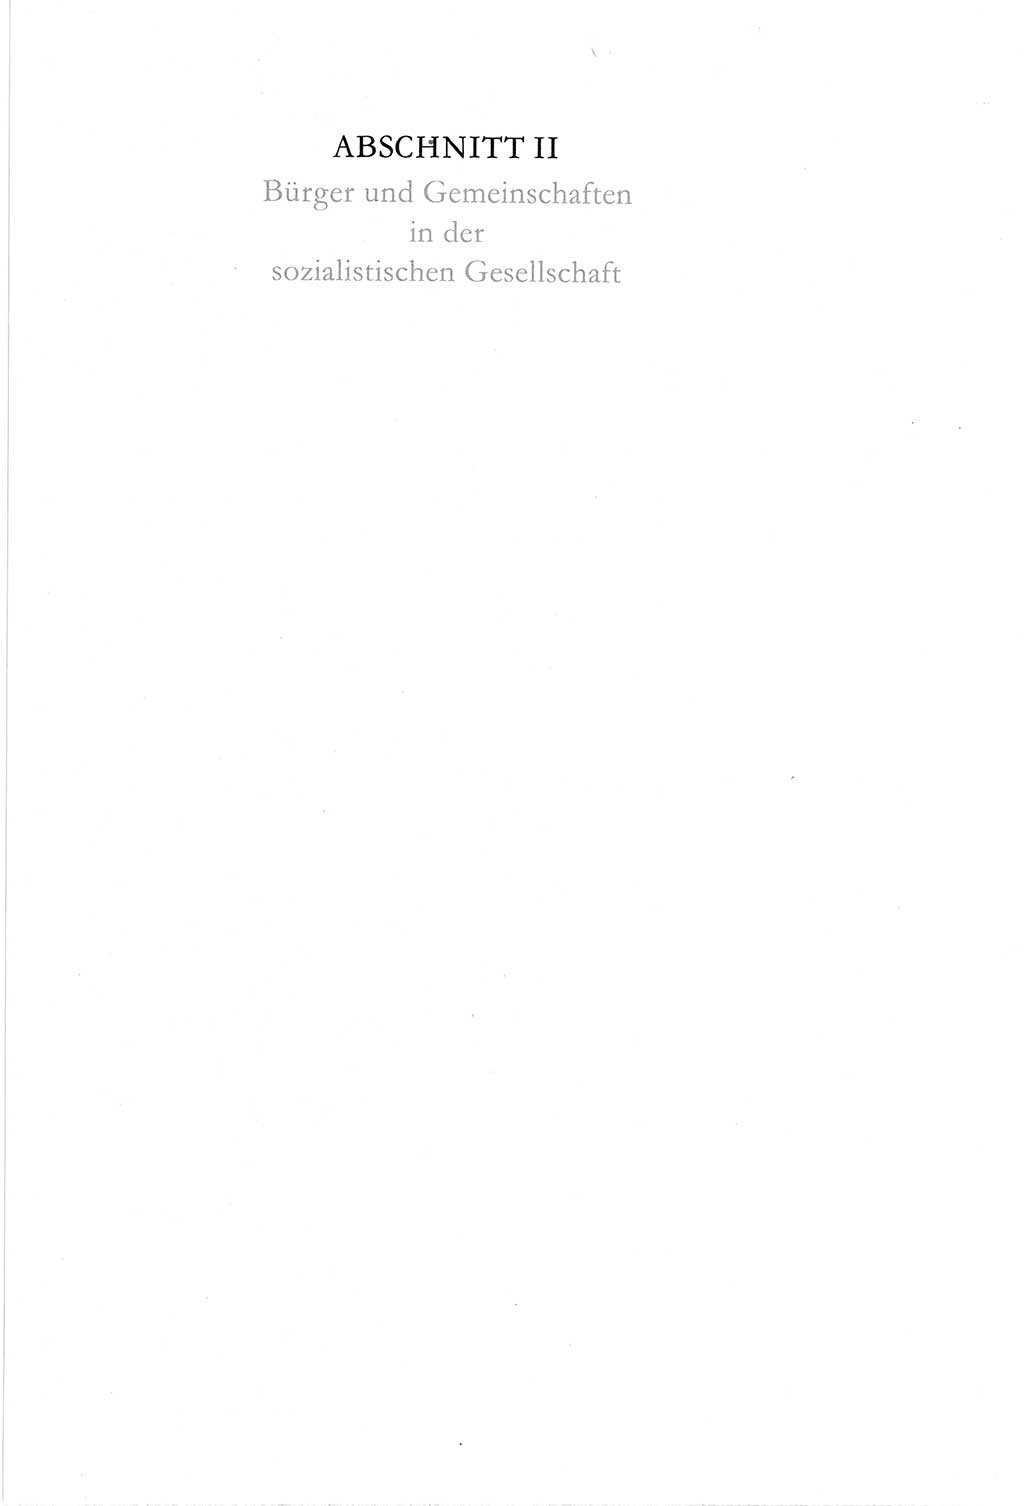 Verfassung der Deutschen Demokratischen Republik (DDR) vom 6. April 1968, Seite 23 (Verf. DDR 1968, S. 23)